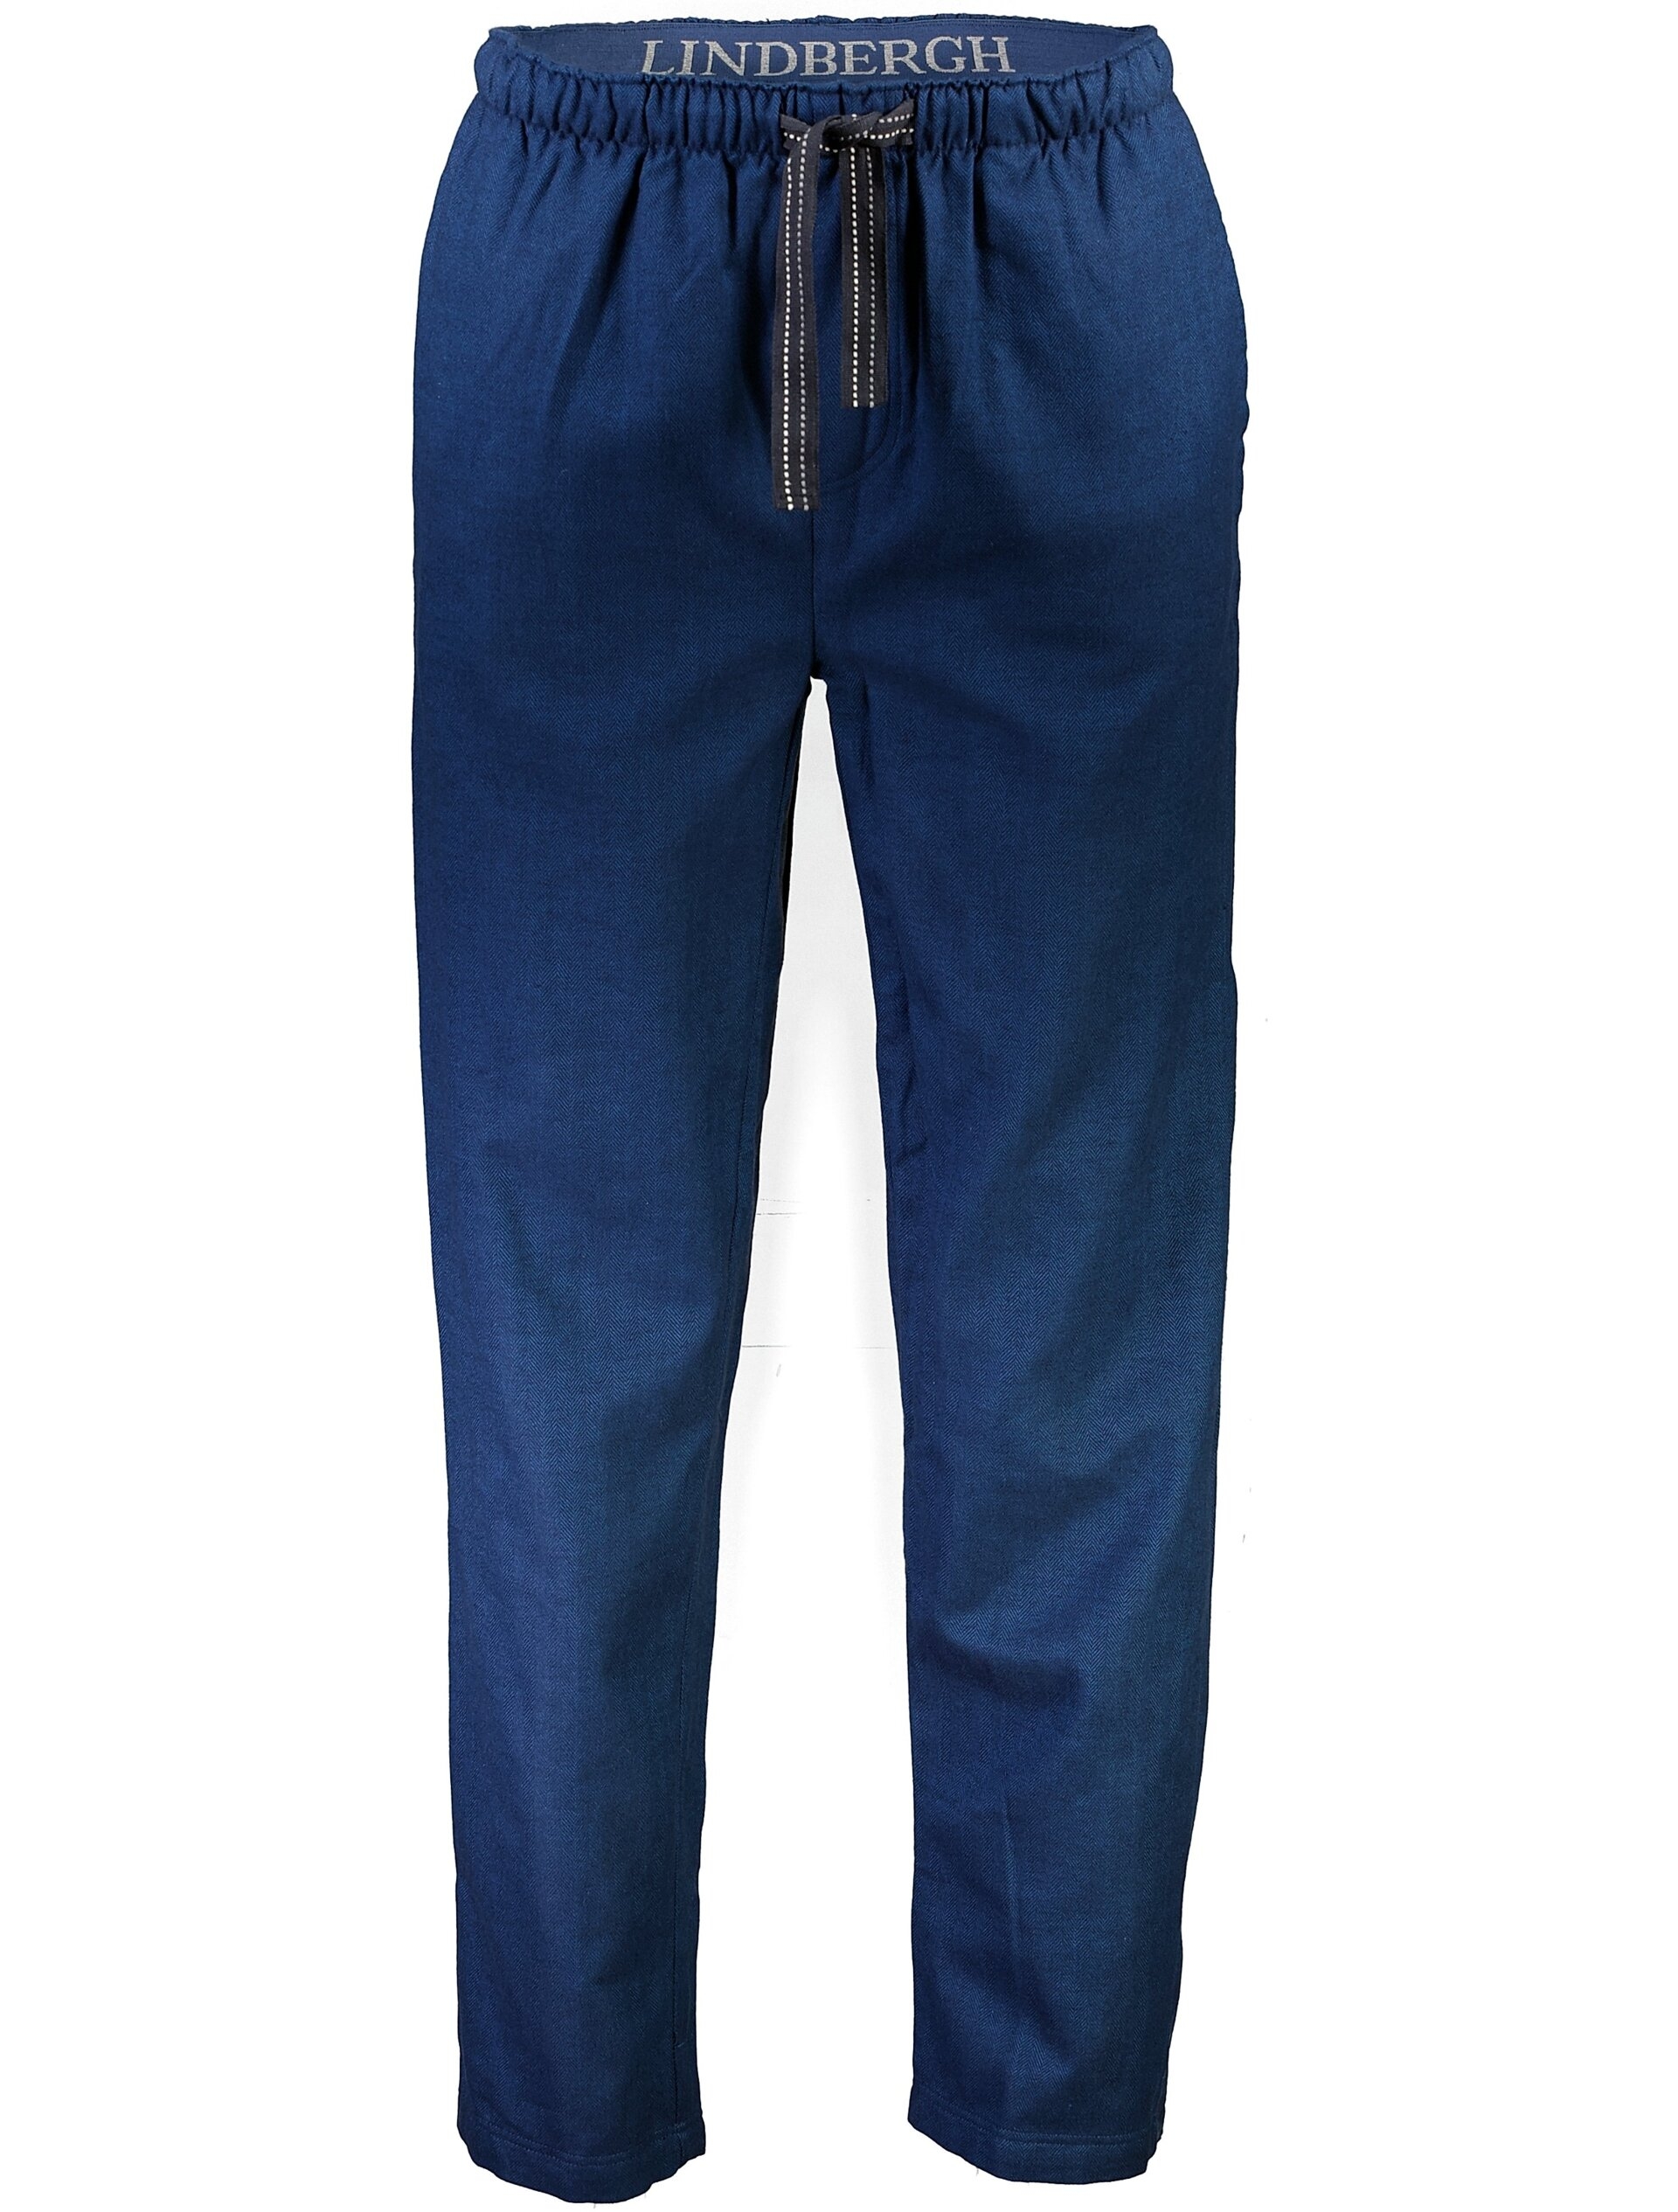 Lindbergh Pyjamas blau / navy